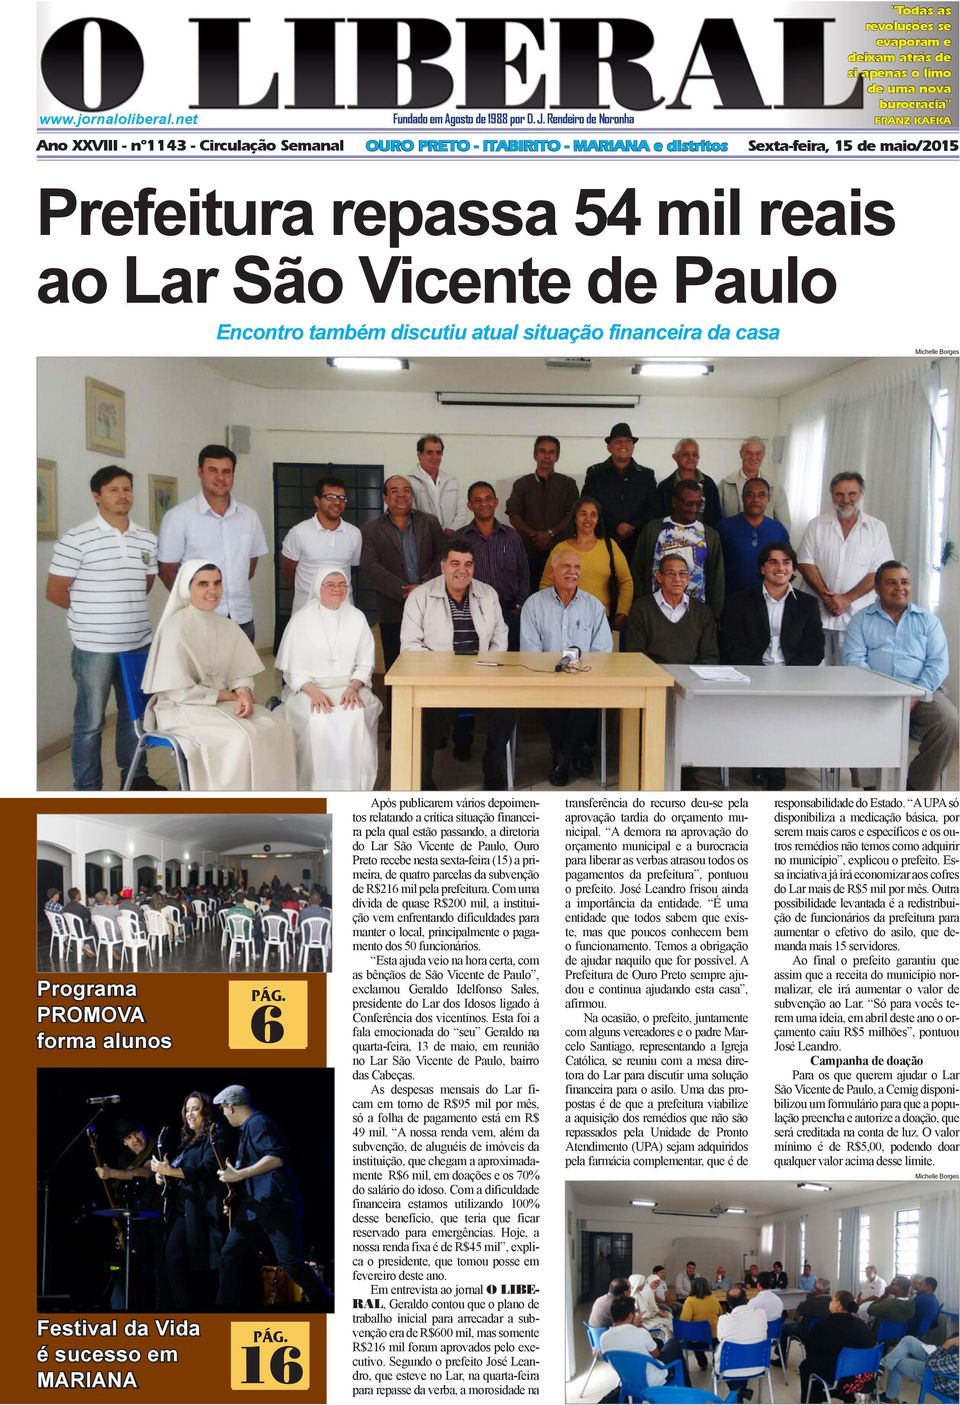 Prefeitura repassa 54 mil reais ao Lar São Vicente de Paulo Encontro também discutiu atual situação financeira da casa Michelle Borges Programa PROMOVA forma alunos 6 PÁG.